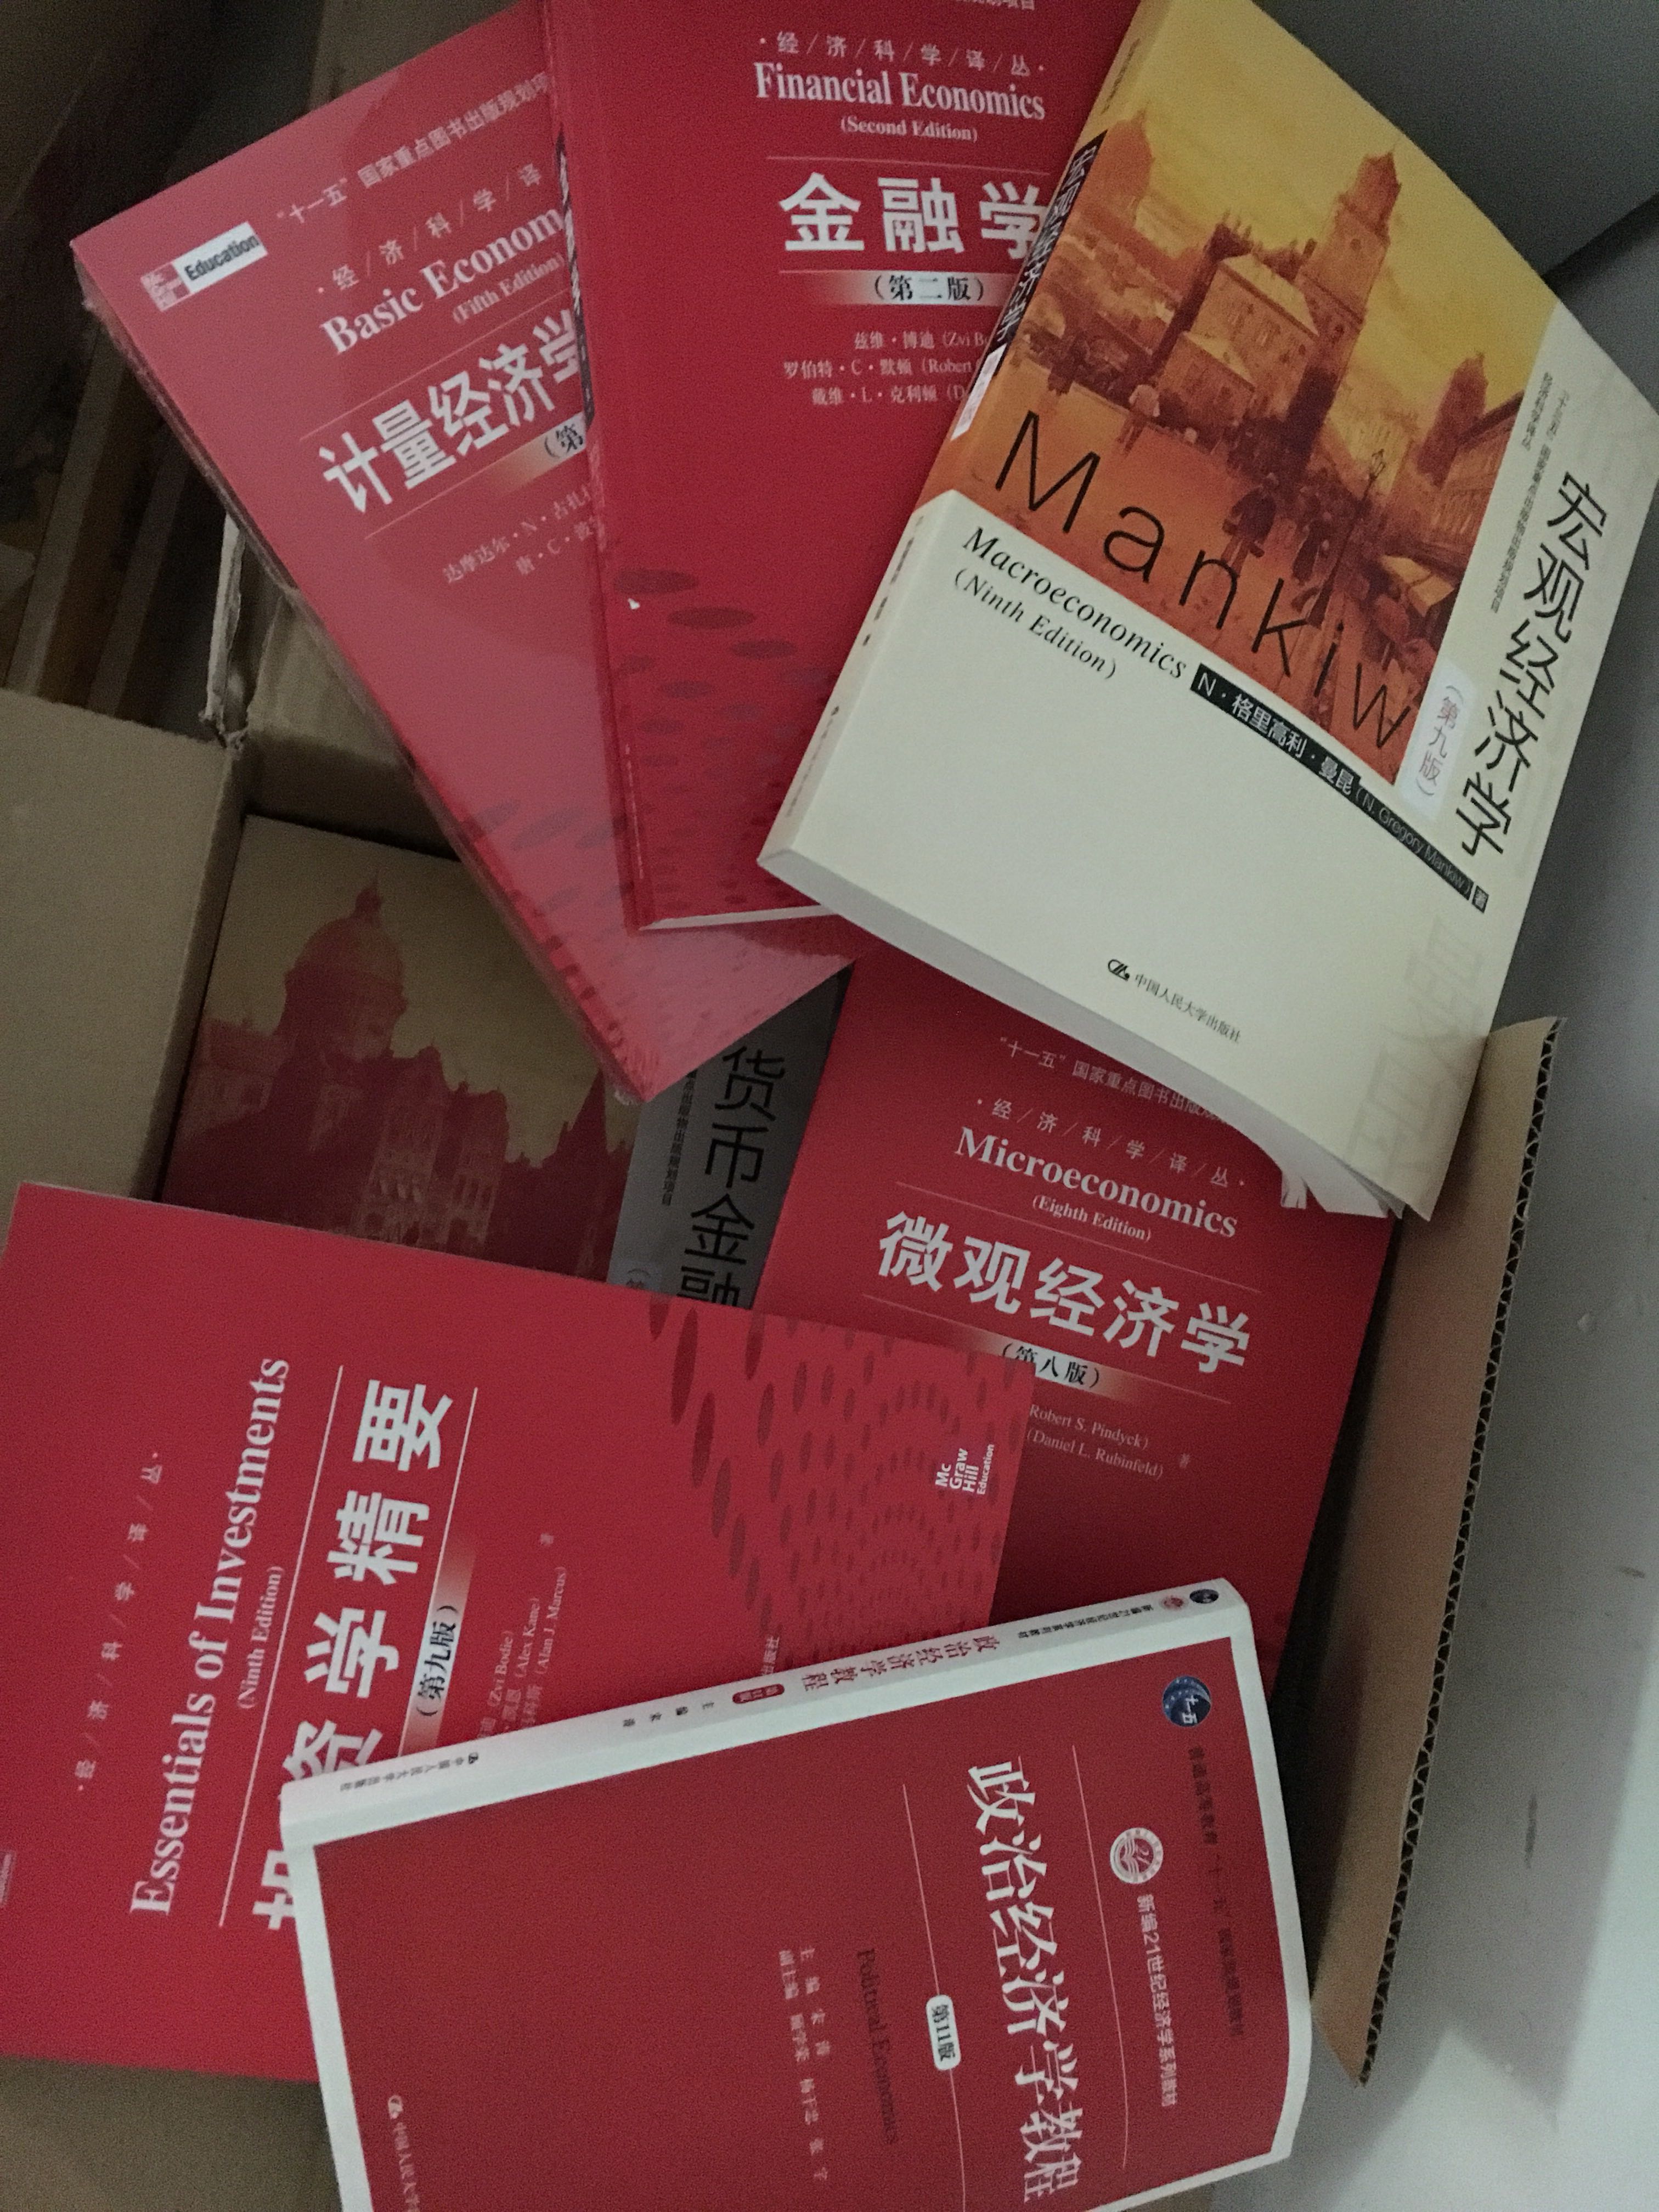 中国人民大学的这套经济学的权威性不可质疑，都是基础与前沿相结合，看经济学必看之书。